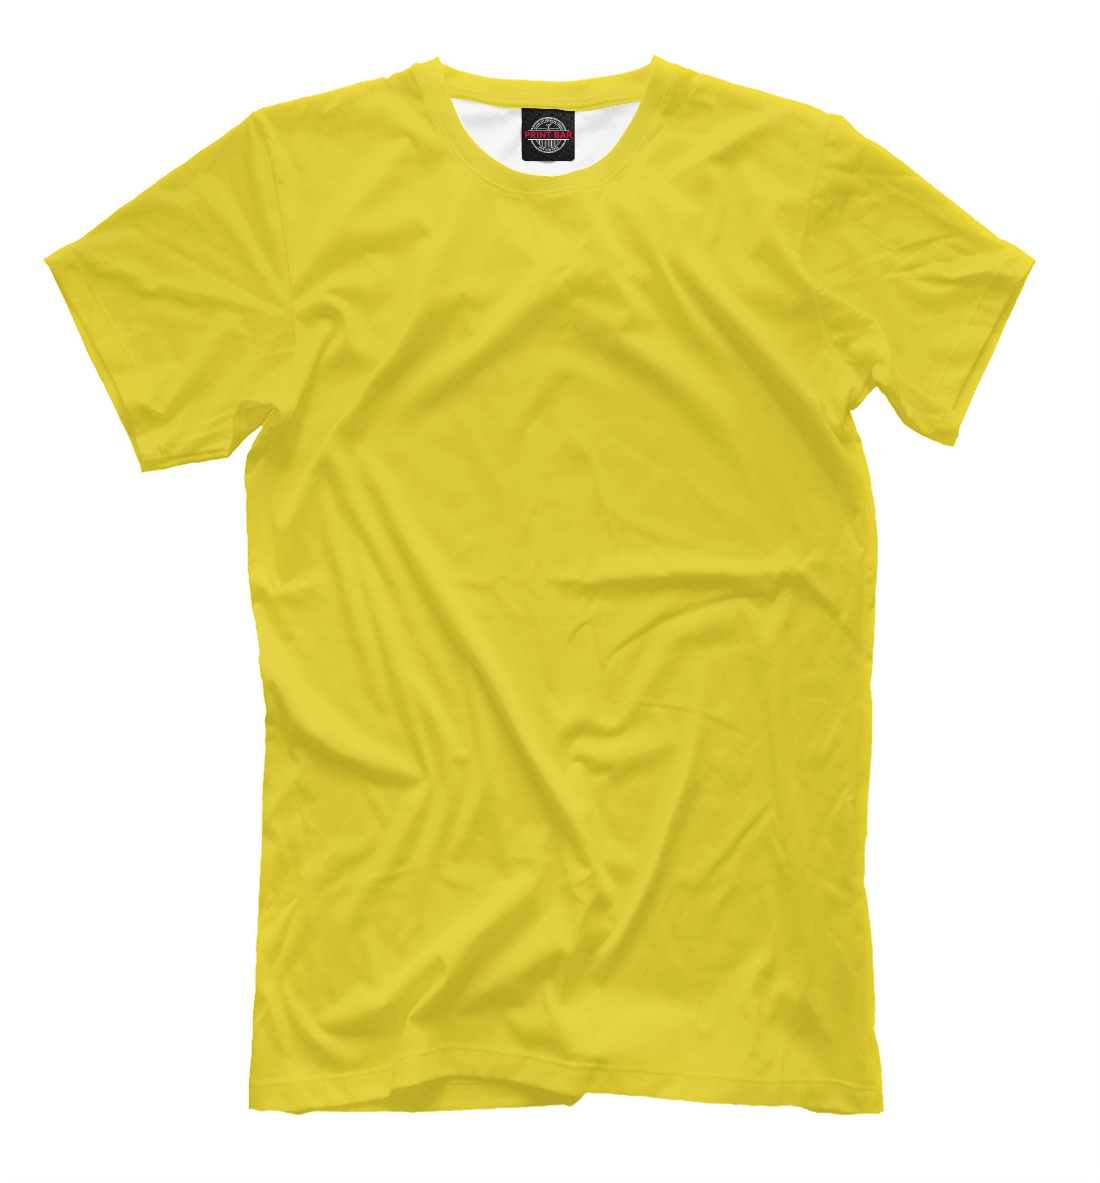 Футболка Цвет Рапсово-желтый для мальчиков, артикул: CLR-692519-fut-2mp